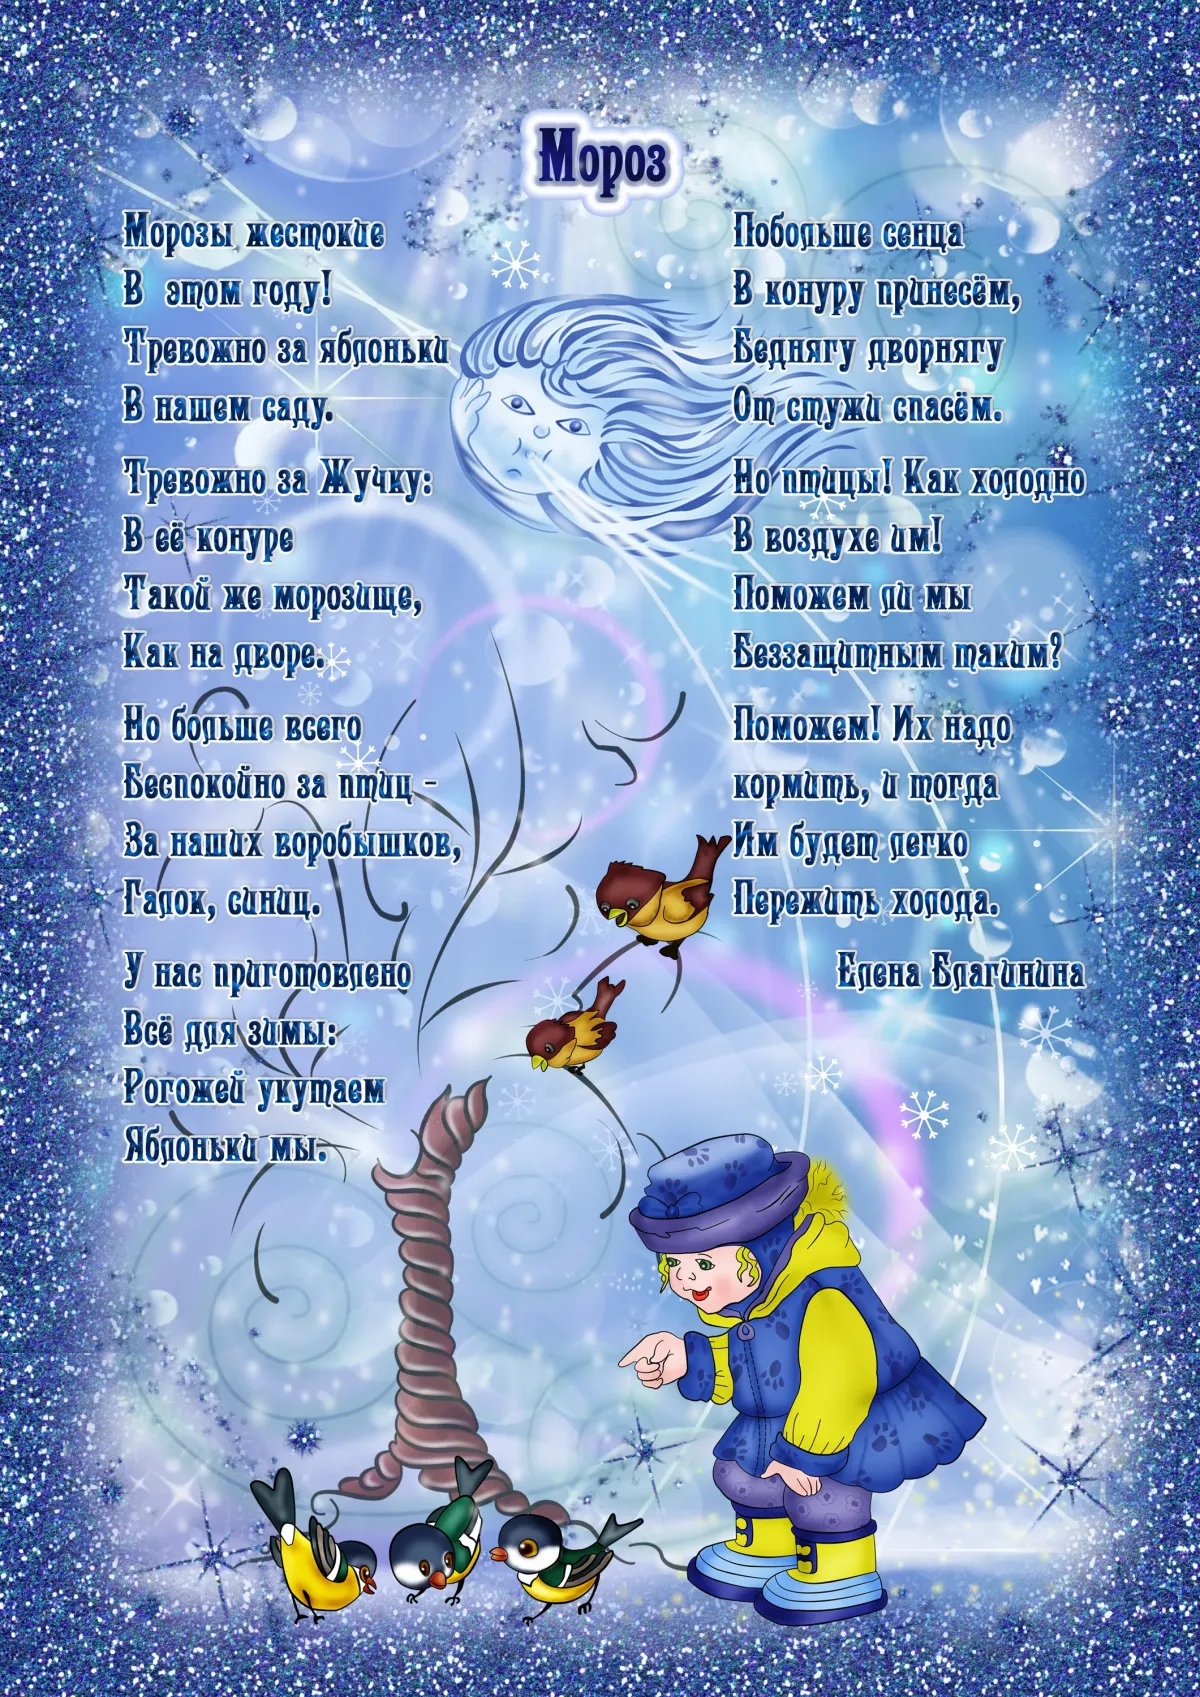 Короткие детские стихи 9 лет. Стихи про зиму. Стихотворении ПРТ зиму. Стихи для дитие прозиму. Стихи про Зизу для детей.